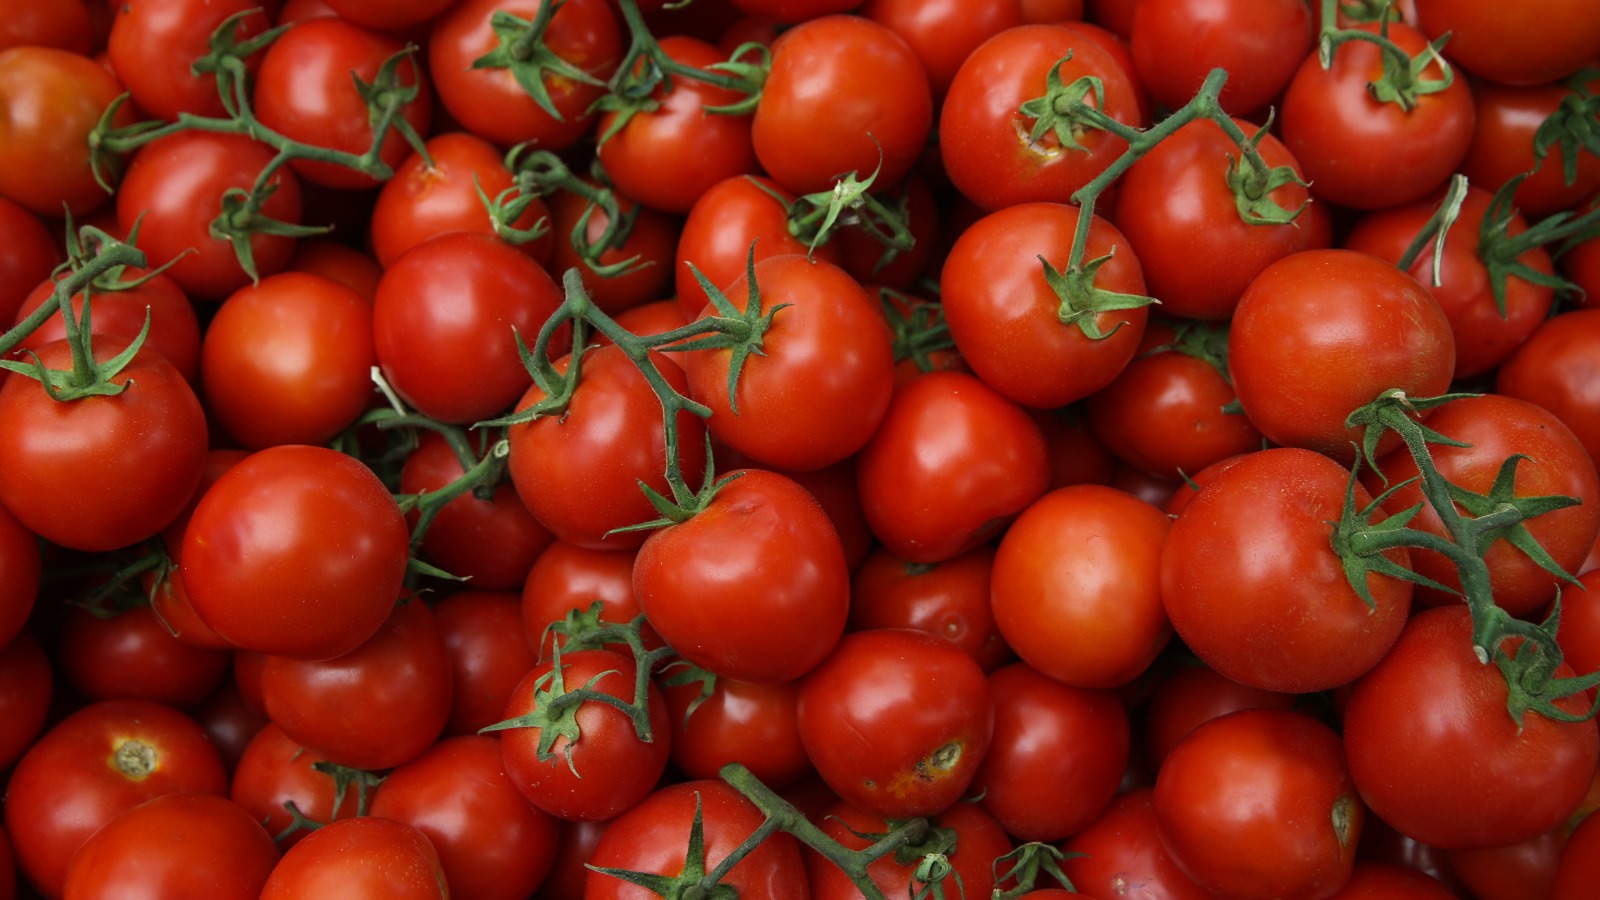 Israelisches Saatgut verbessert weltweit die Tomatenernten